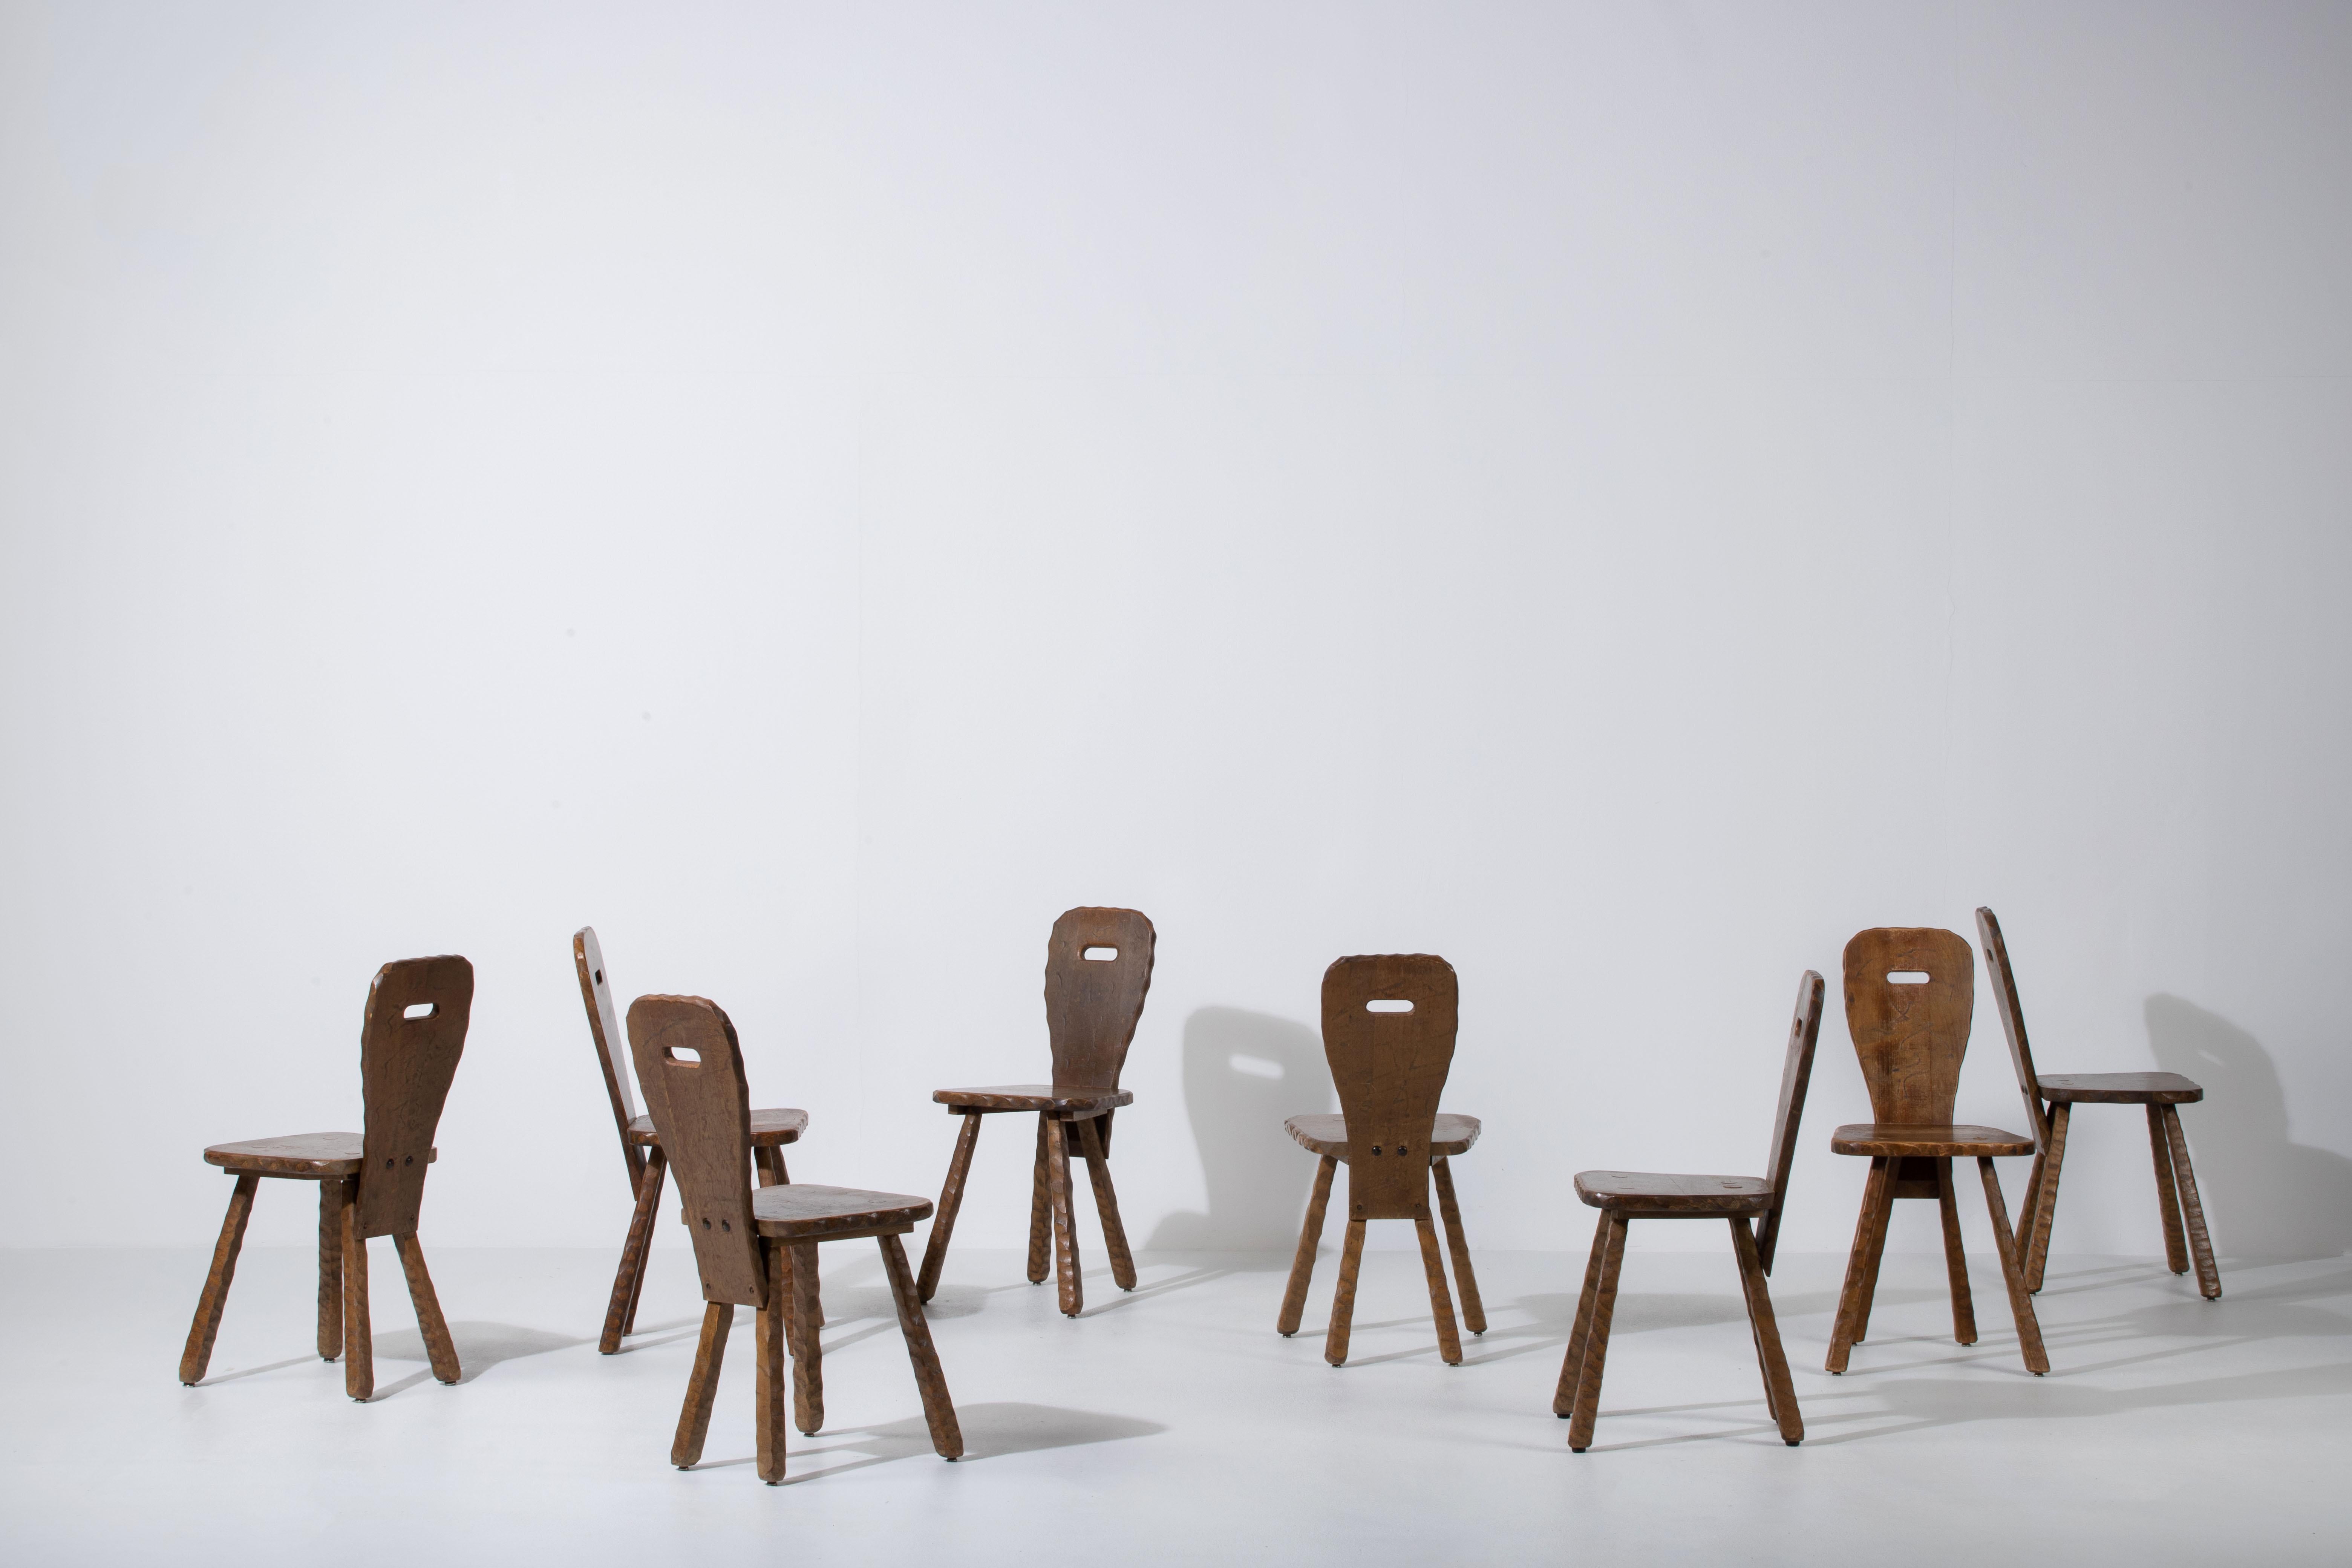 Cet ensemble de six chaises de salle à manger brutales en chêne massif a été créé dans les années 1940.
Beaux détails de gouge.